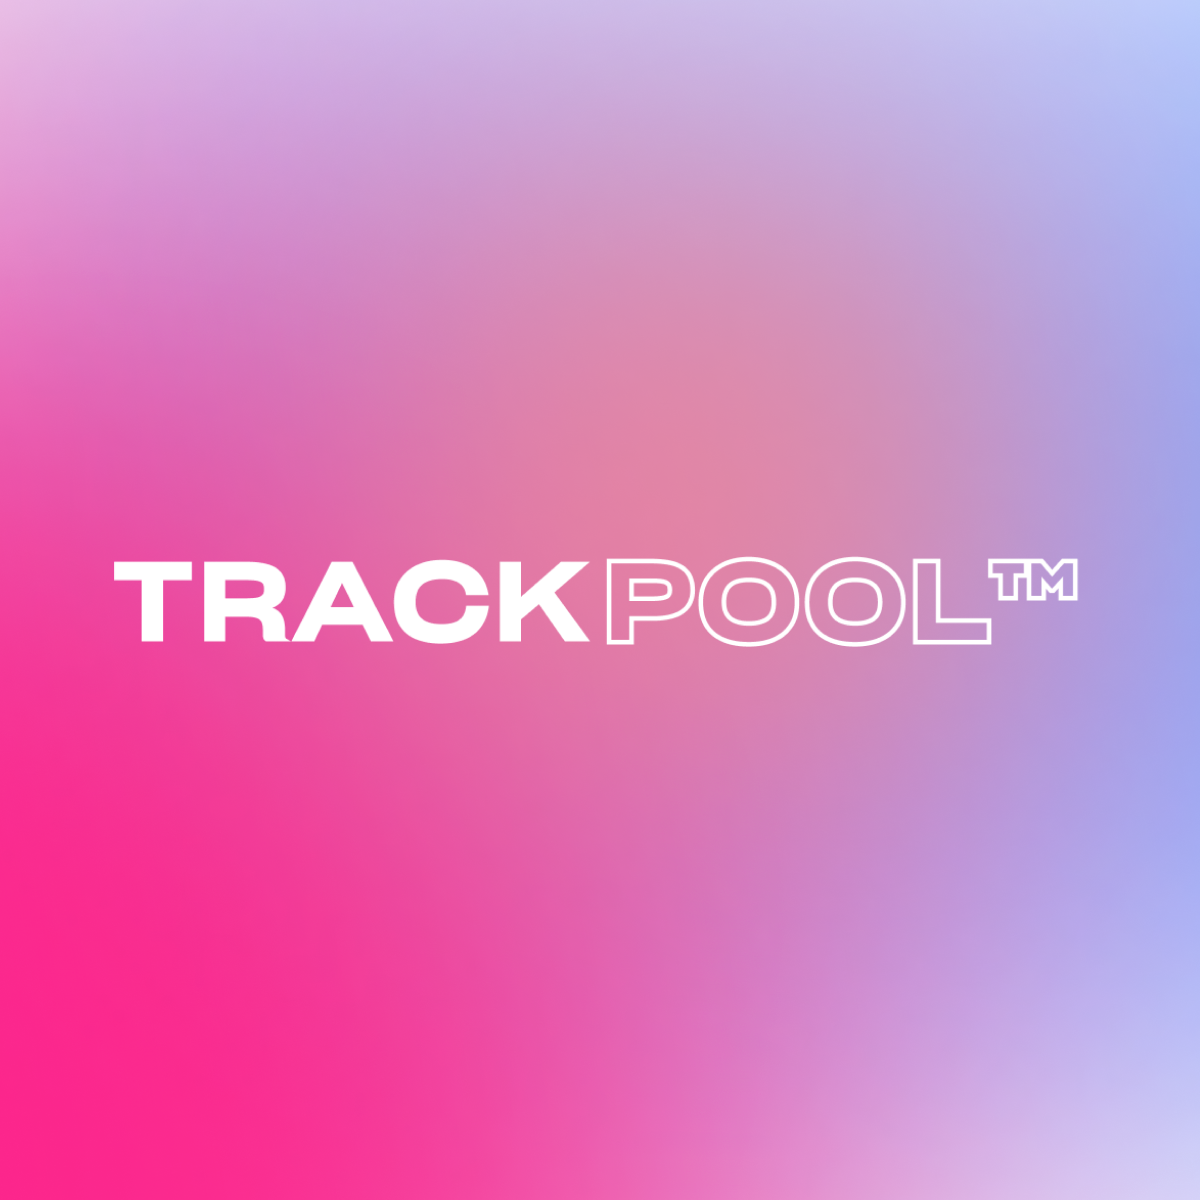 Trackpool